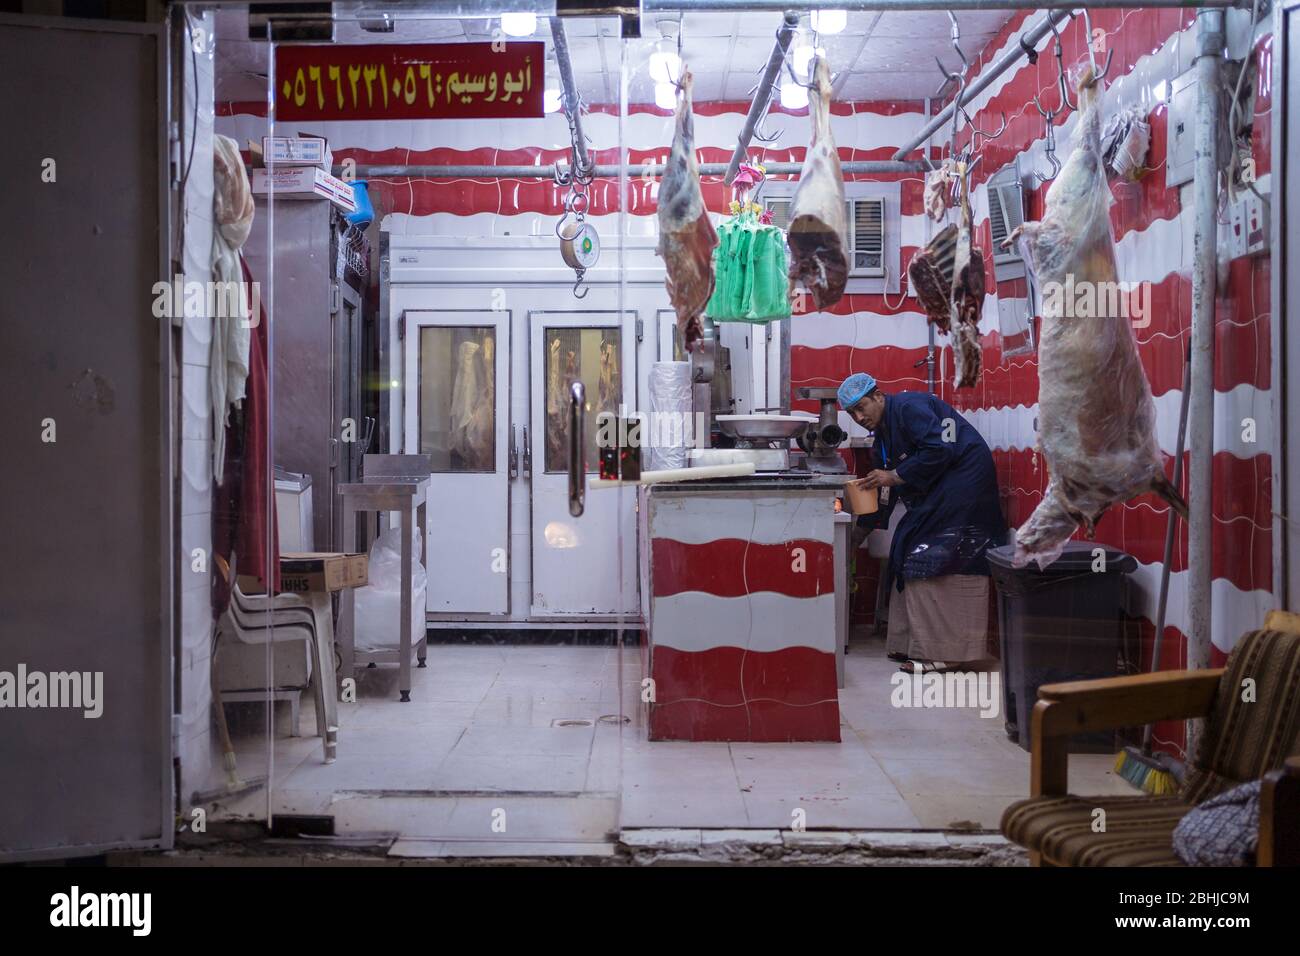 Jeddah / Saudi Arabia - January 16, 2020: man inside a butcher shop in Saudi Arabia Stock Photo